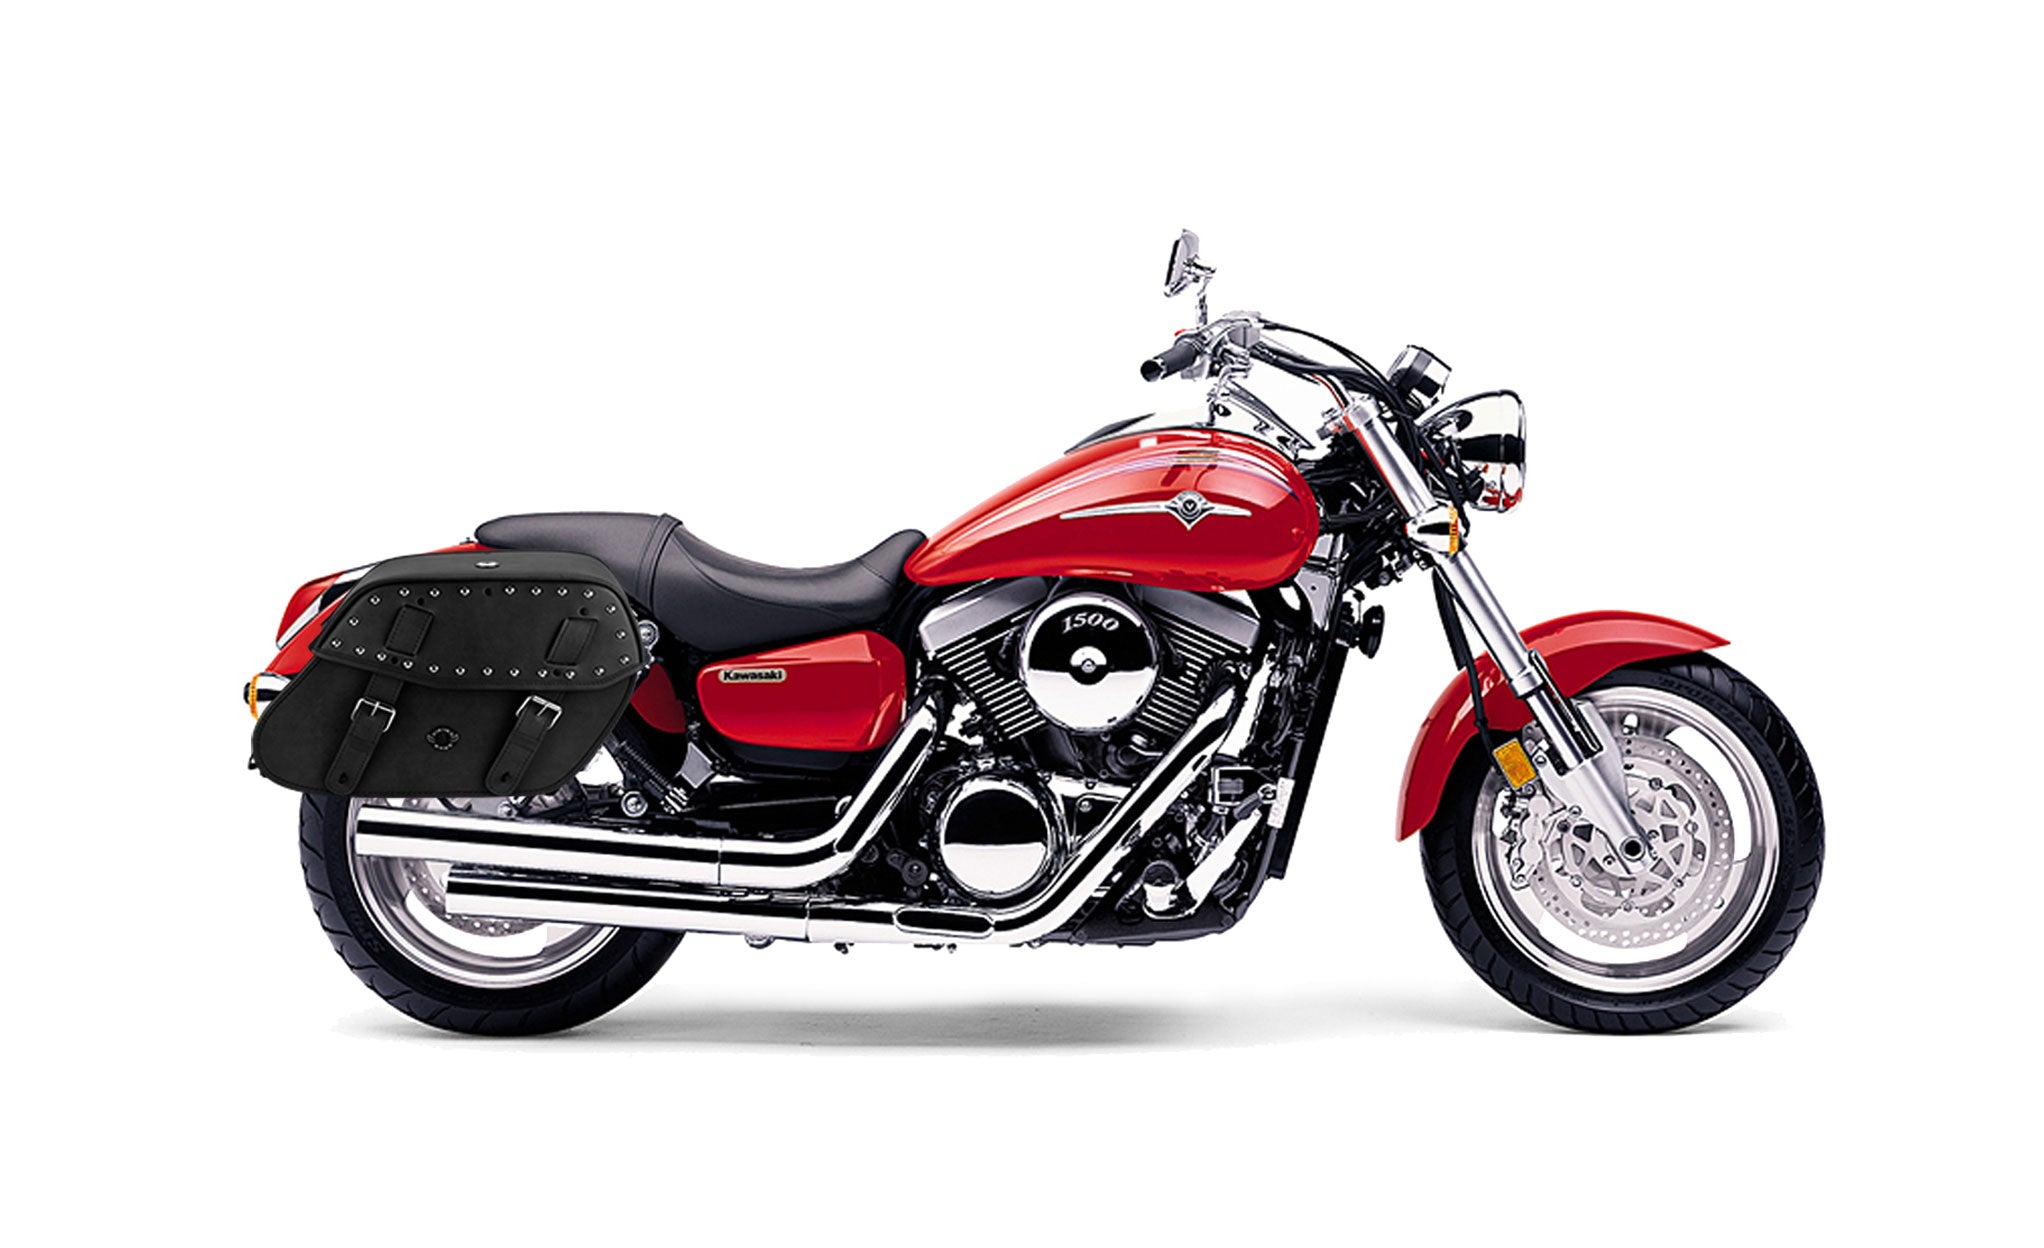 Viking Odin Large Kawasaki Mean Streak 1500 Studded Leather Motorcycle Saddlebags on Bike Photo @expand